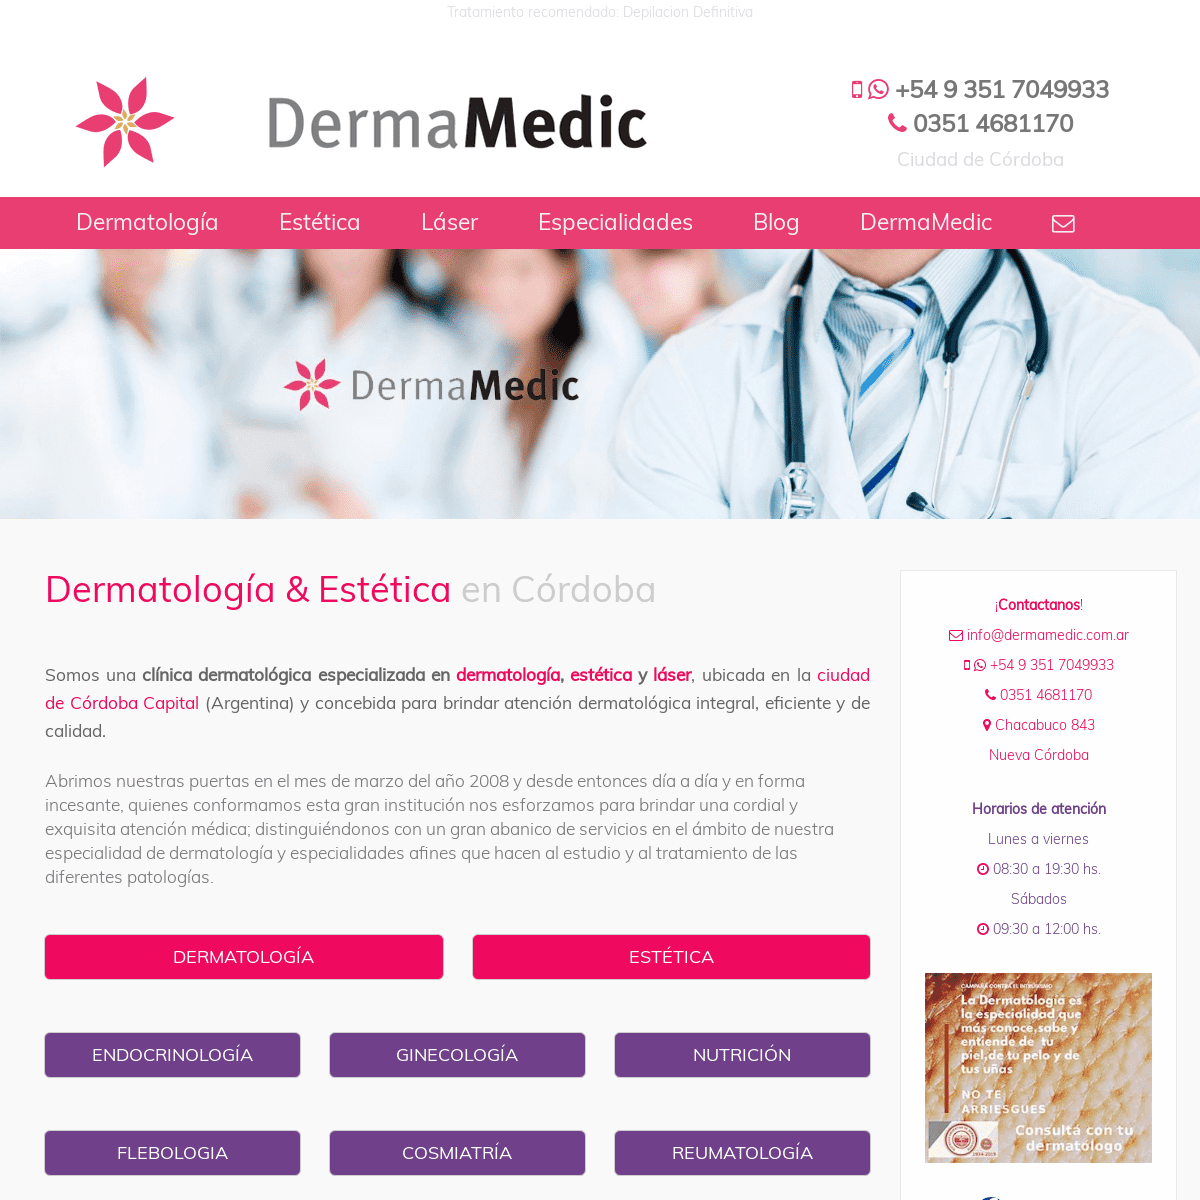 A complete backup of dermamedic.com.ar